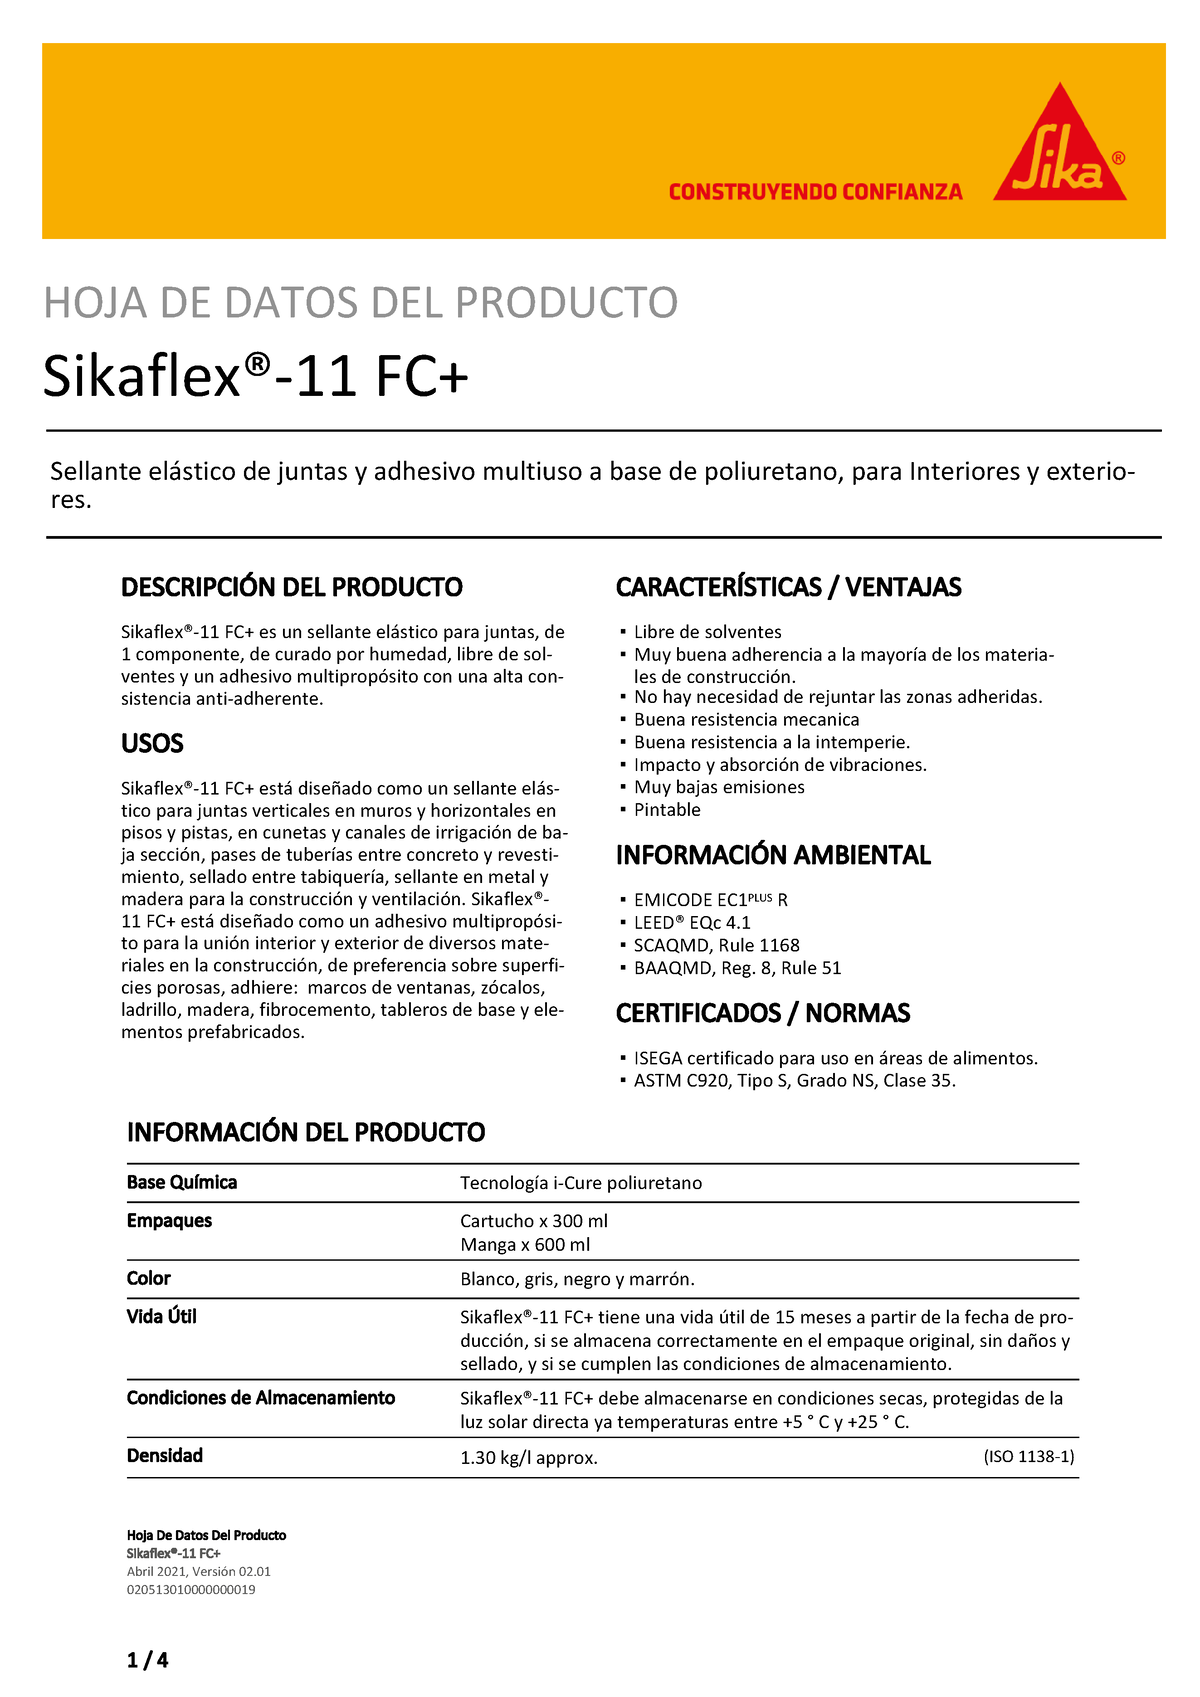 Sikaflex 292i Blanco Adhesivo Alta Resistencia Cartucho 300 ml